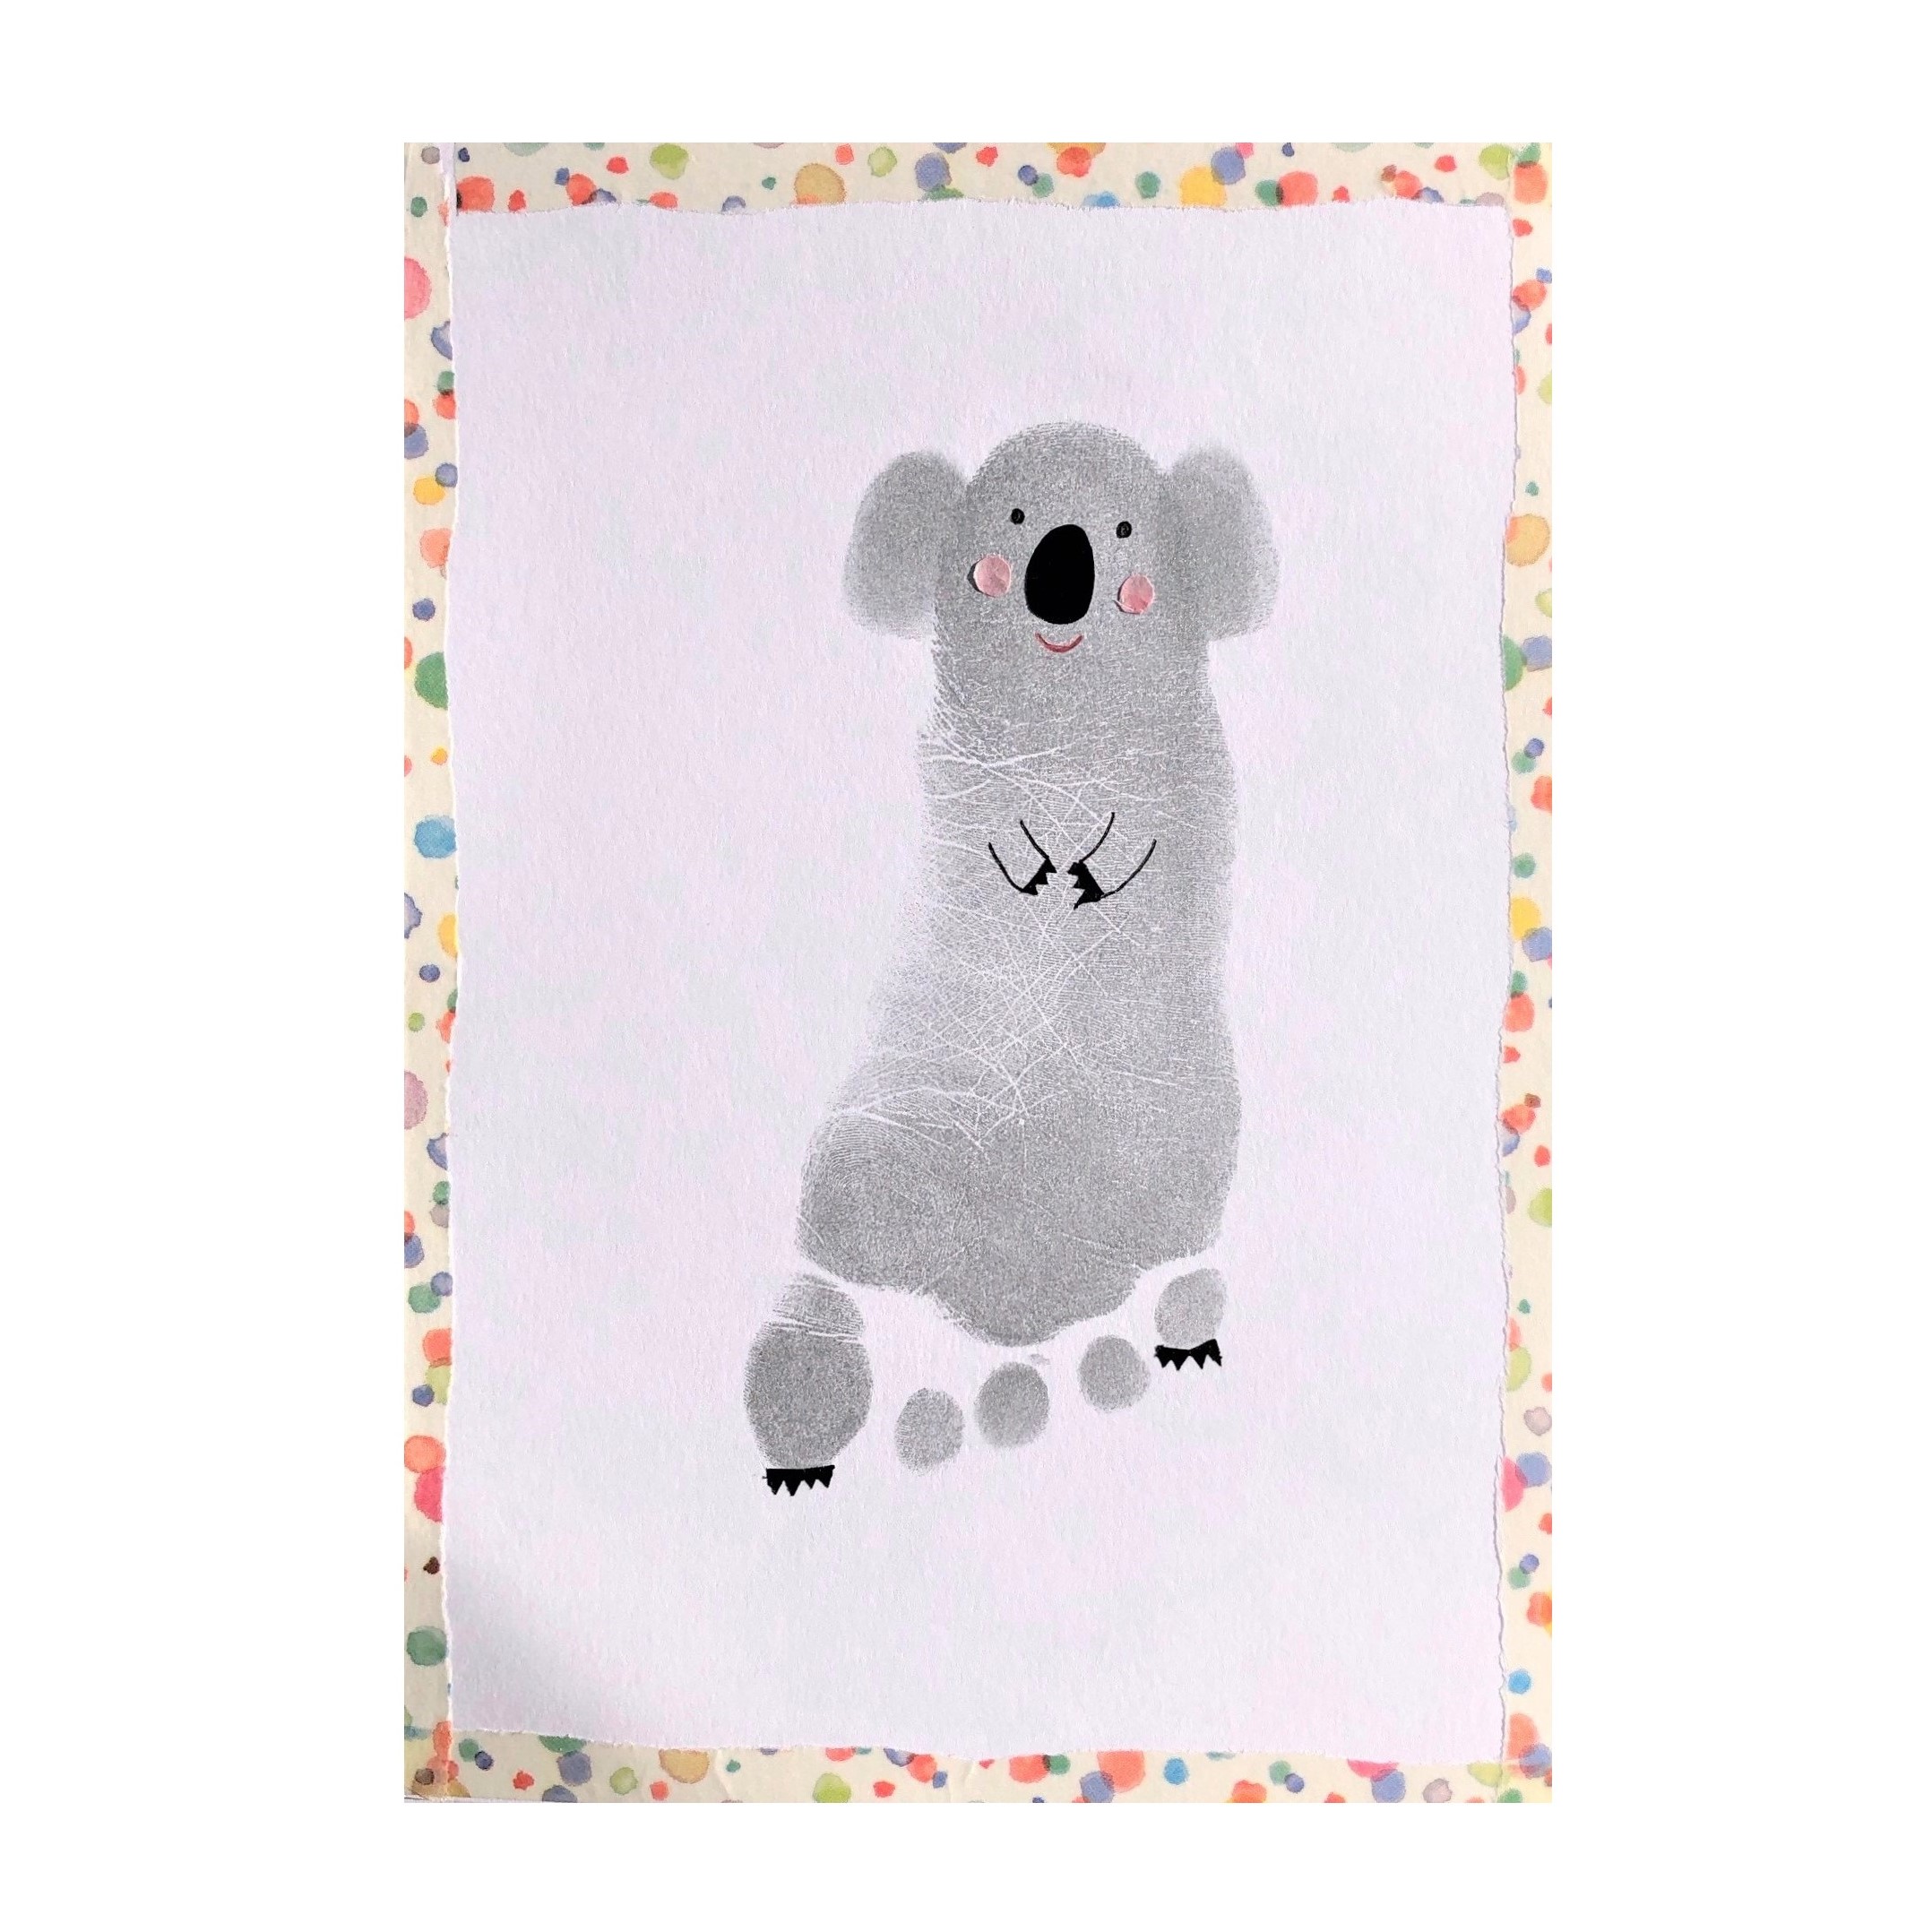 コアラ 足形 赤ちゃんの 今 を残す手形アートpetapeta Art